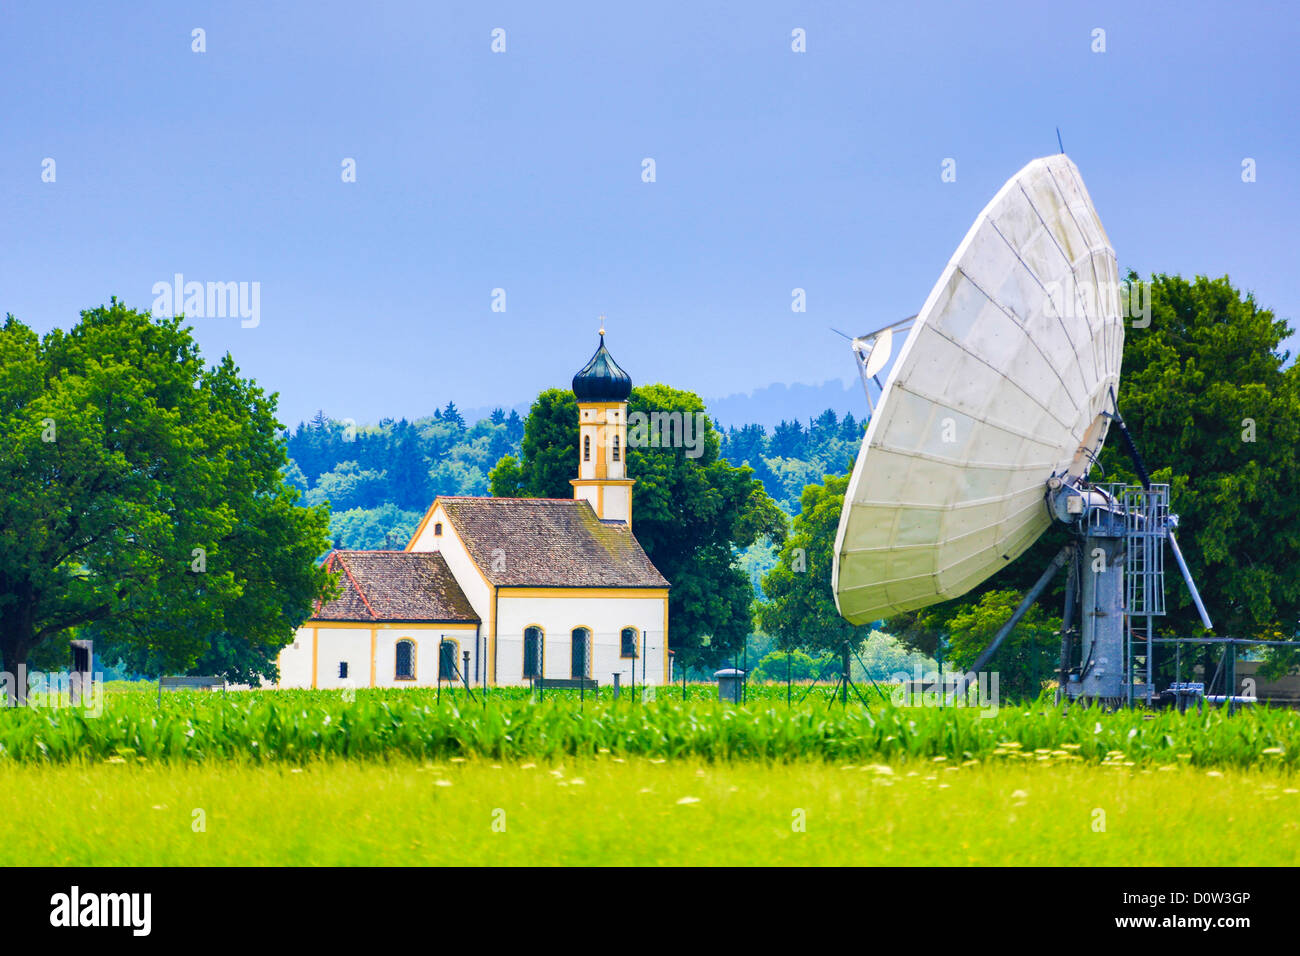 Germany, Europe, travel, antennas, Garching, Bavaria, colourful, communication, radio, technology Stock Photo